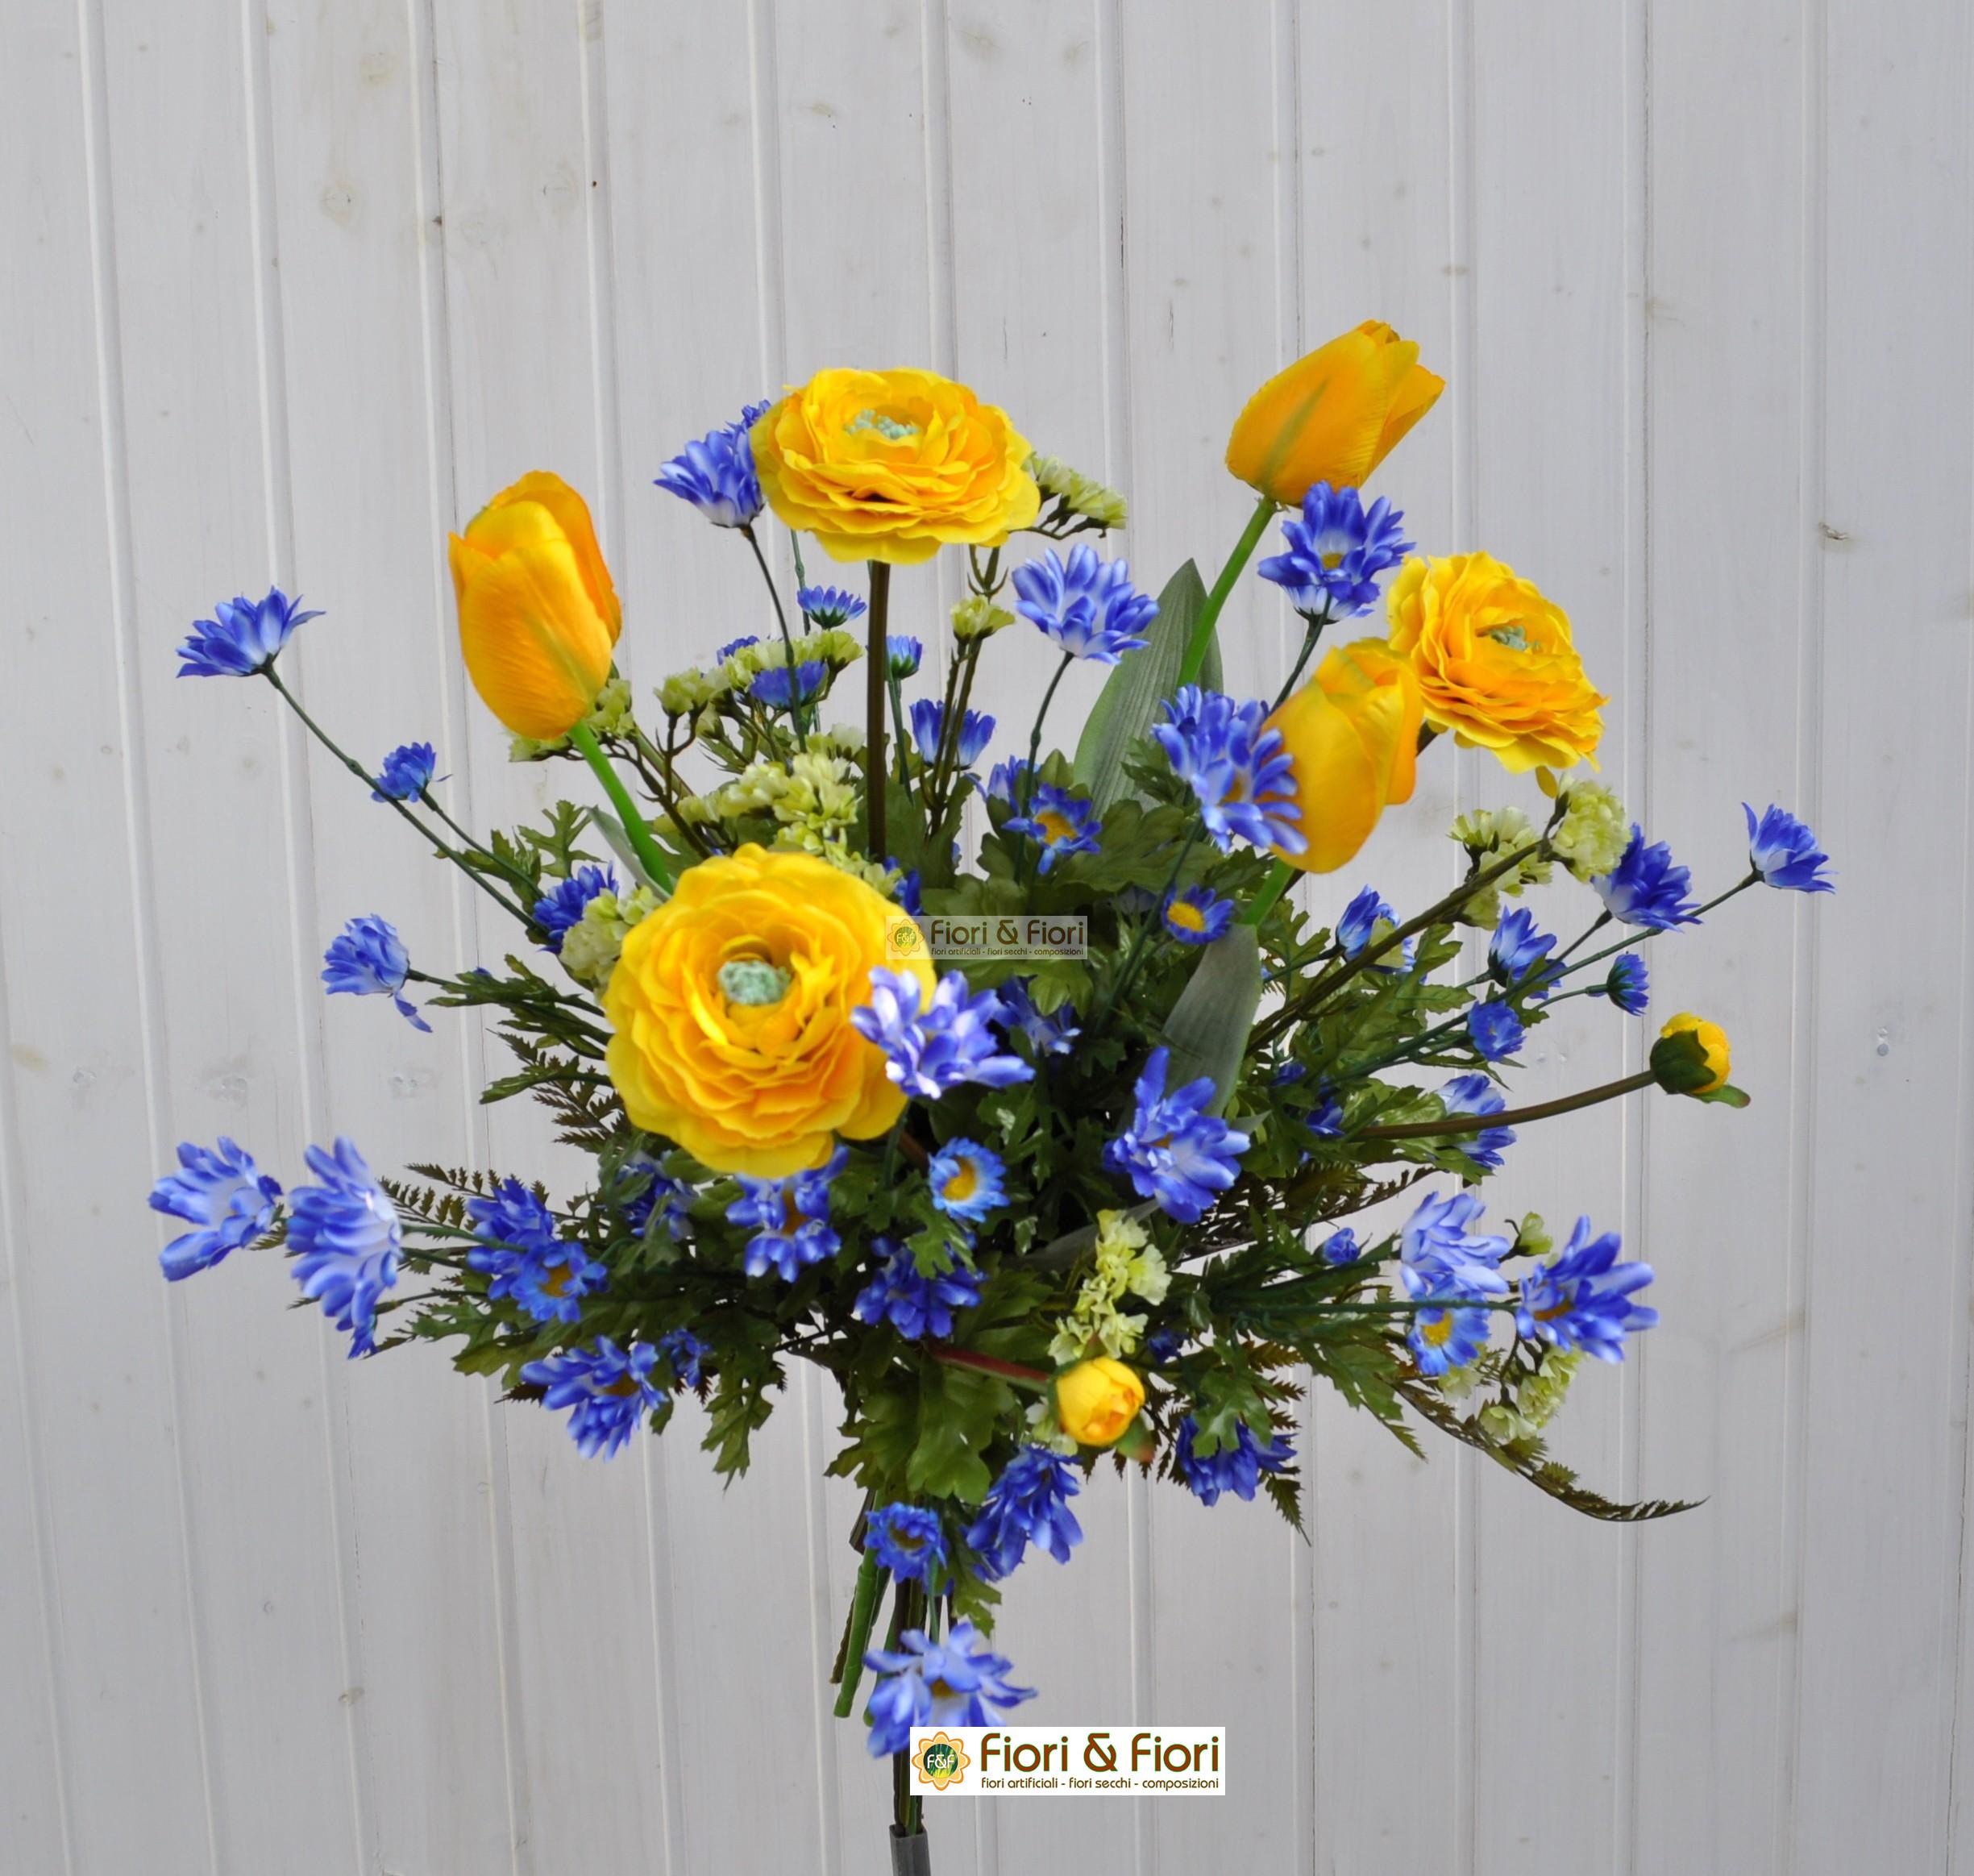 10 splendido bouquet di tulipani artificiali realistici al pu con giallo  gambo